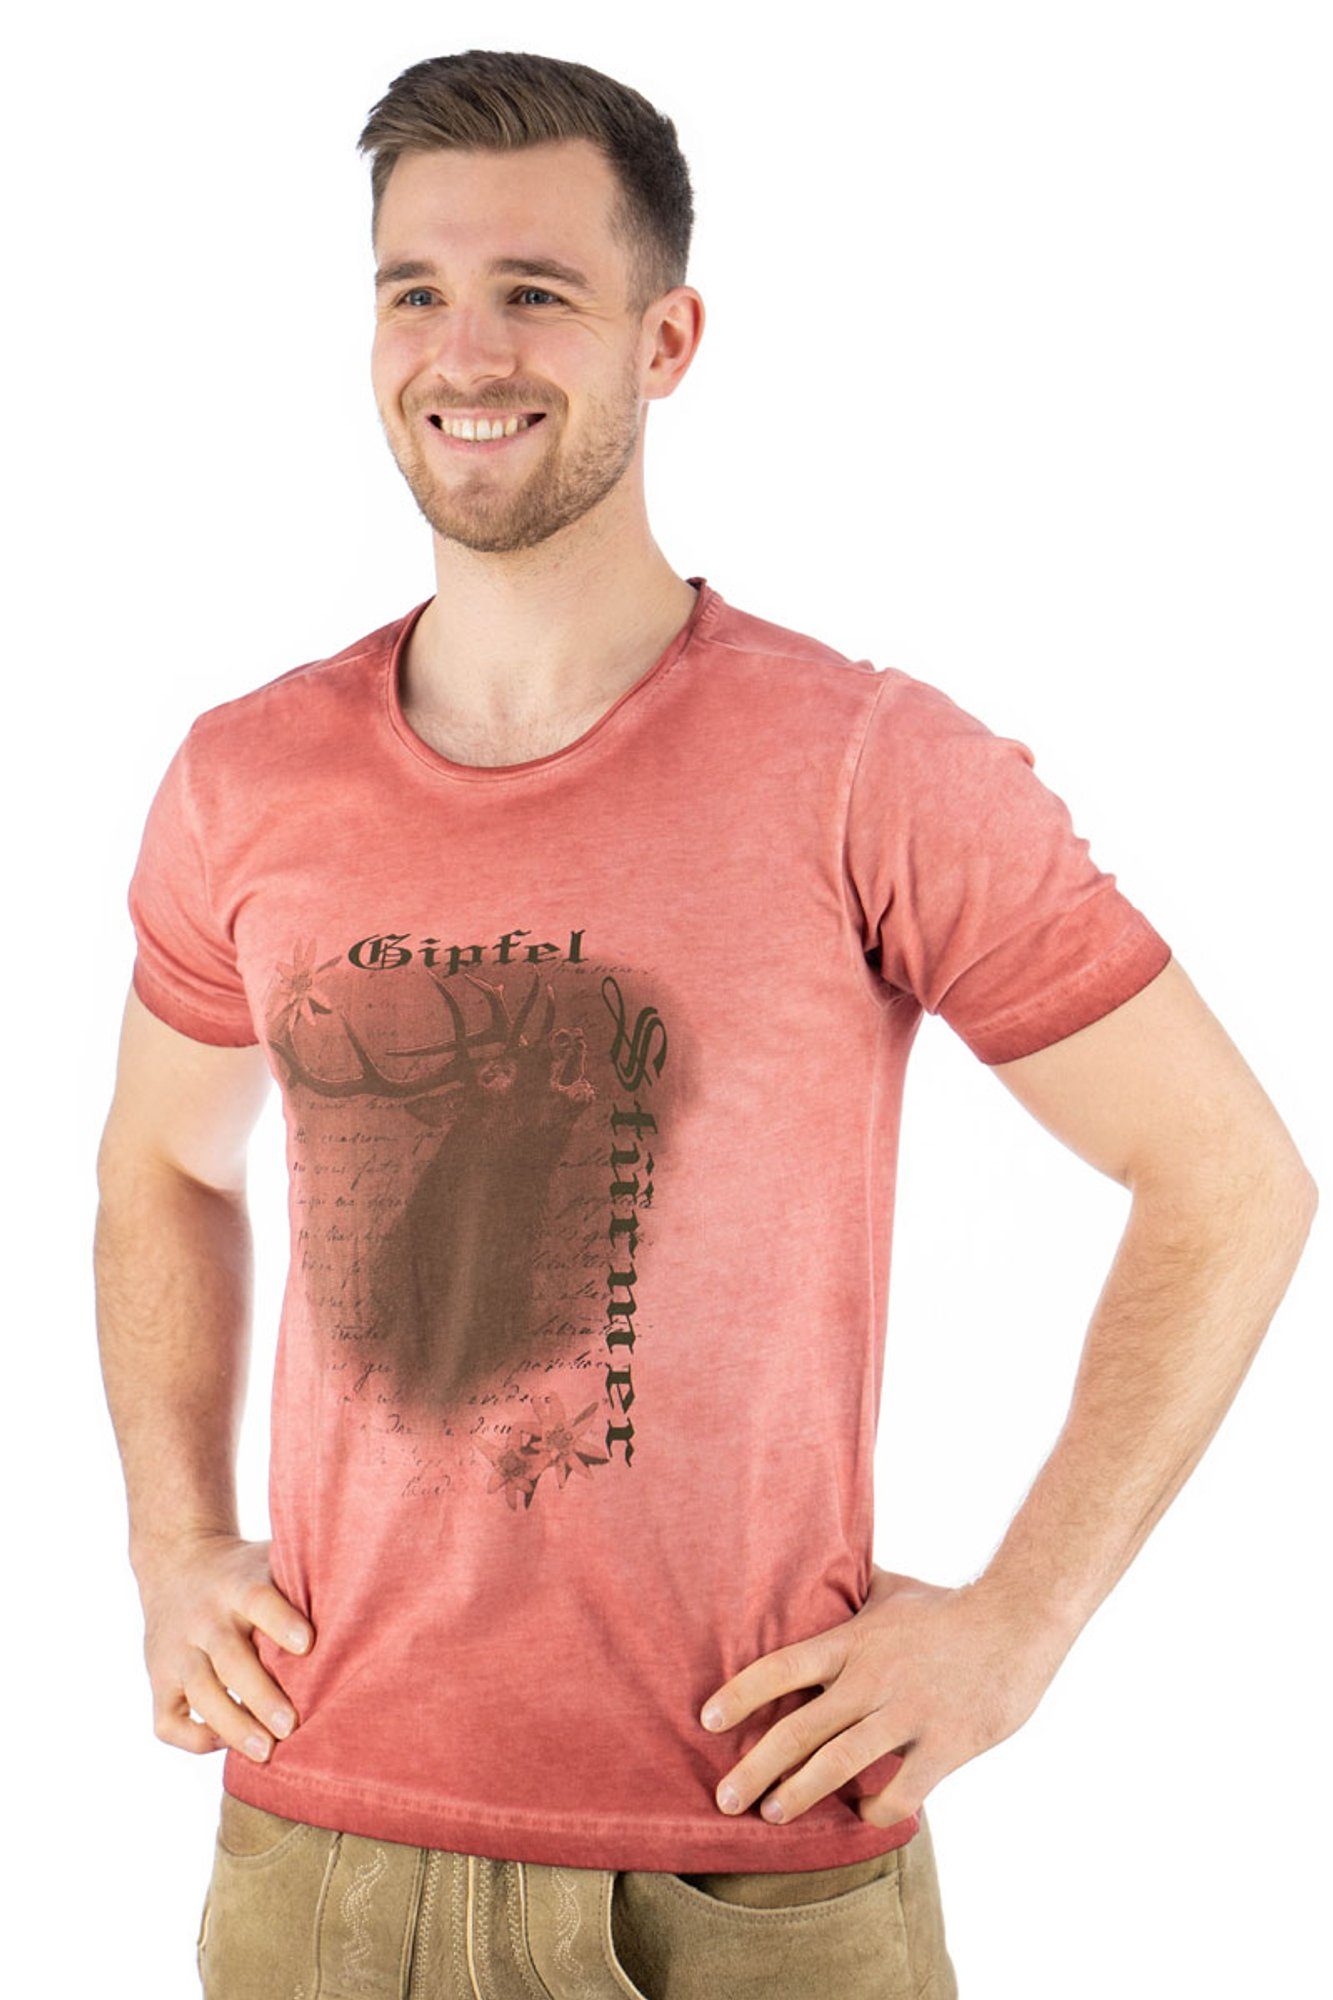 OS-Trachten Trachtenshirt Lyusop Kurzarm T-Shirt mit Motivdruck weinrot